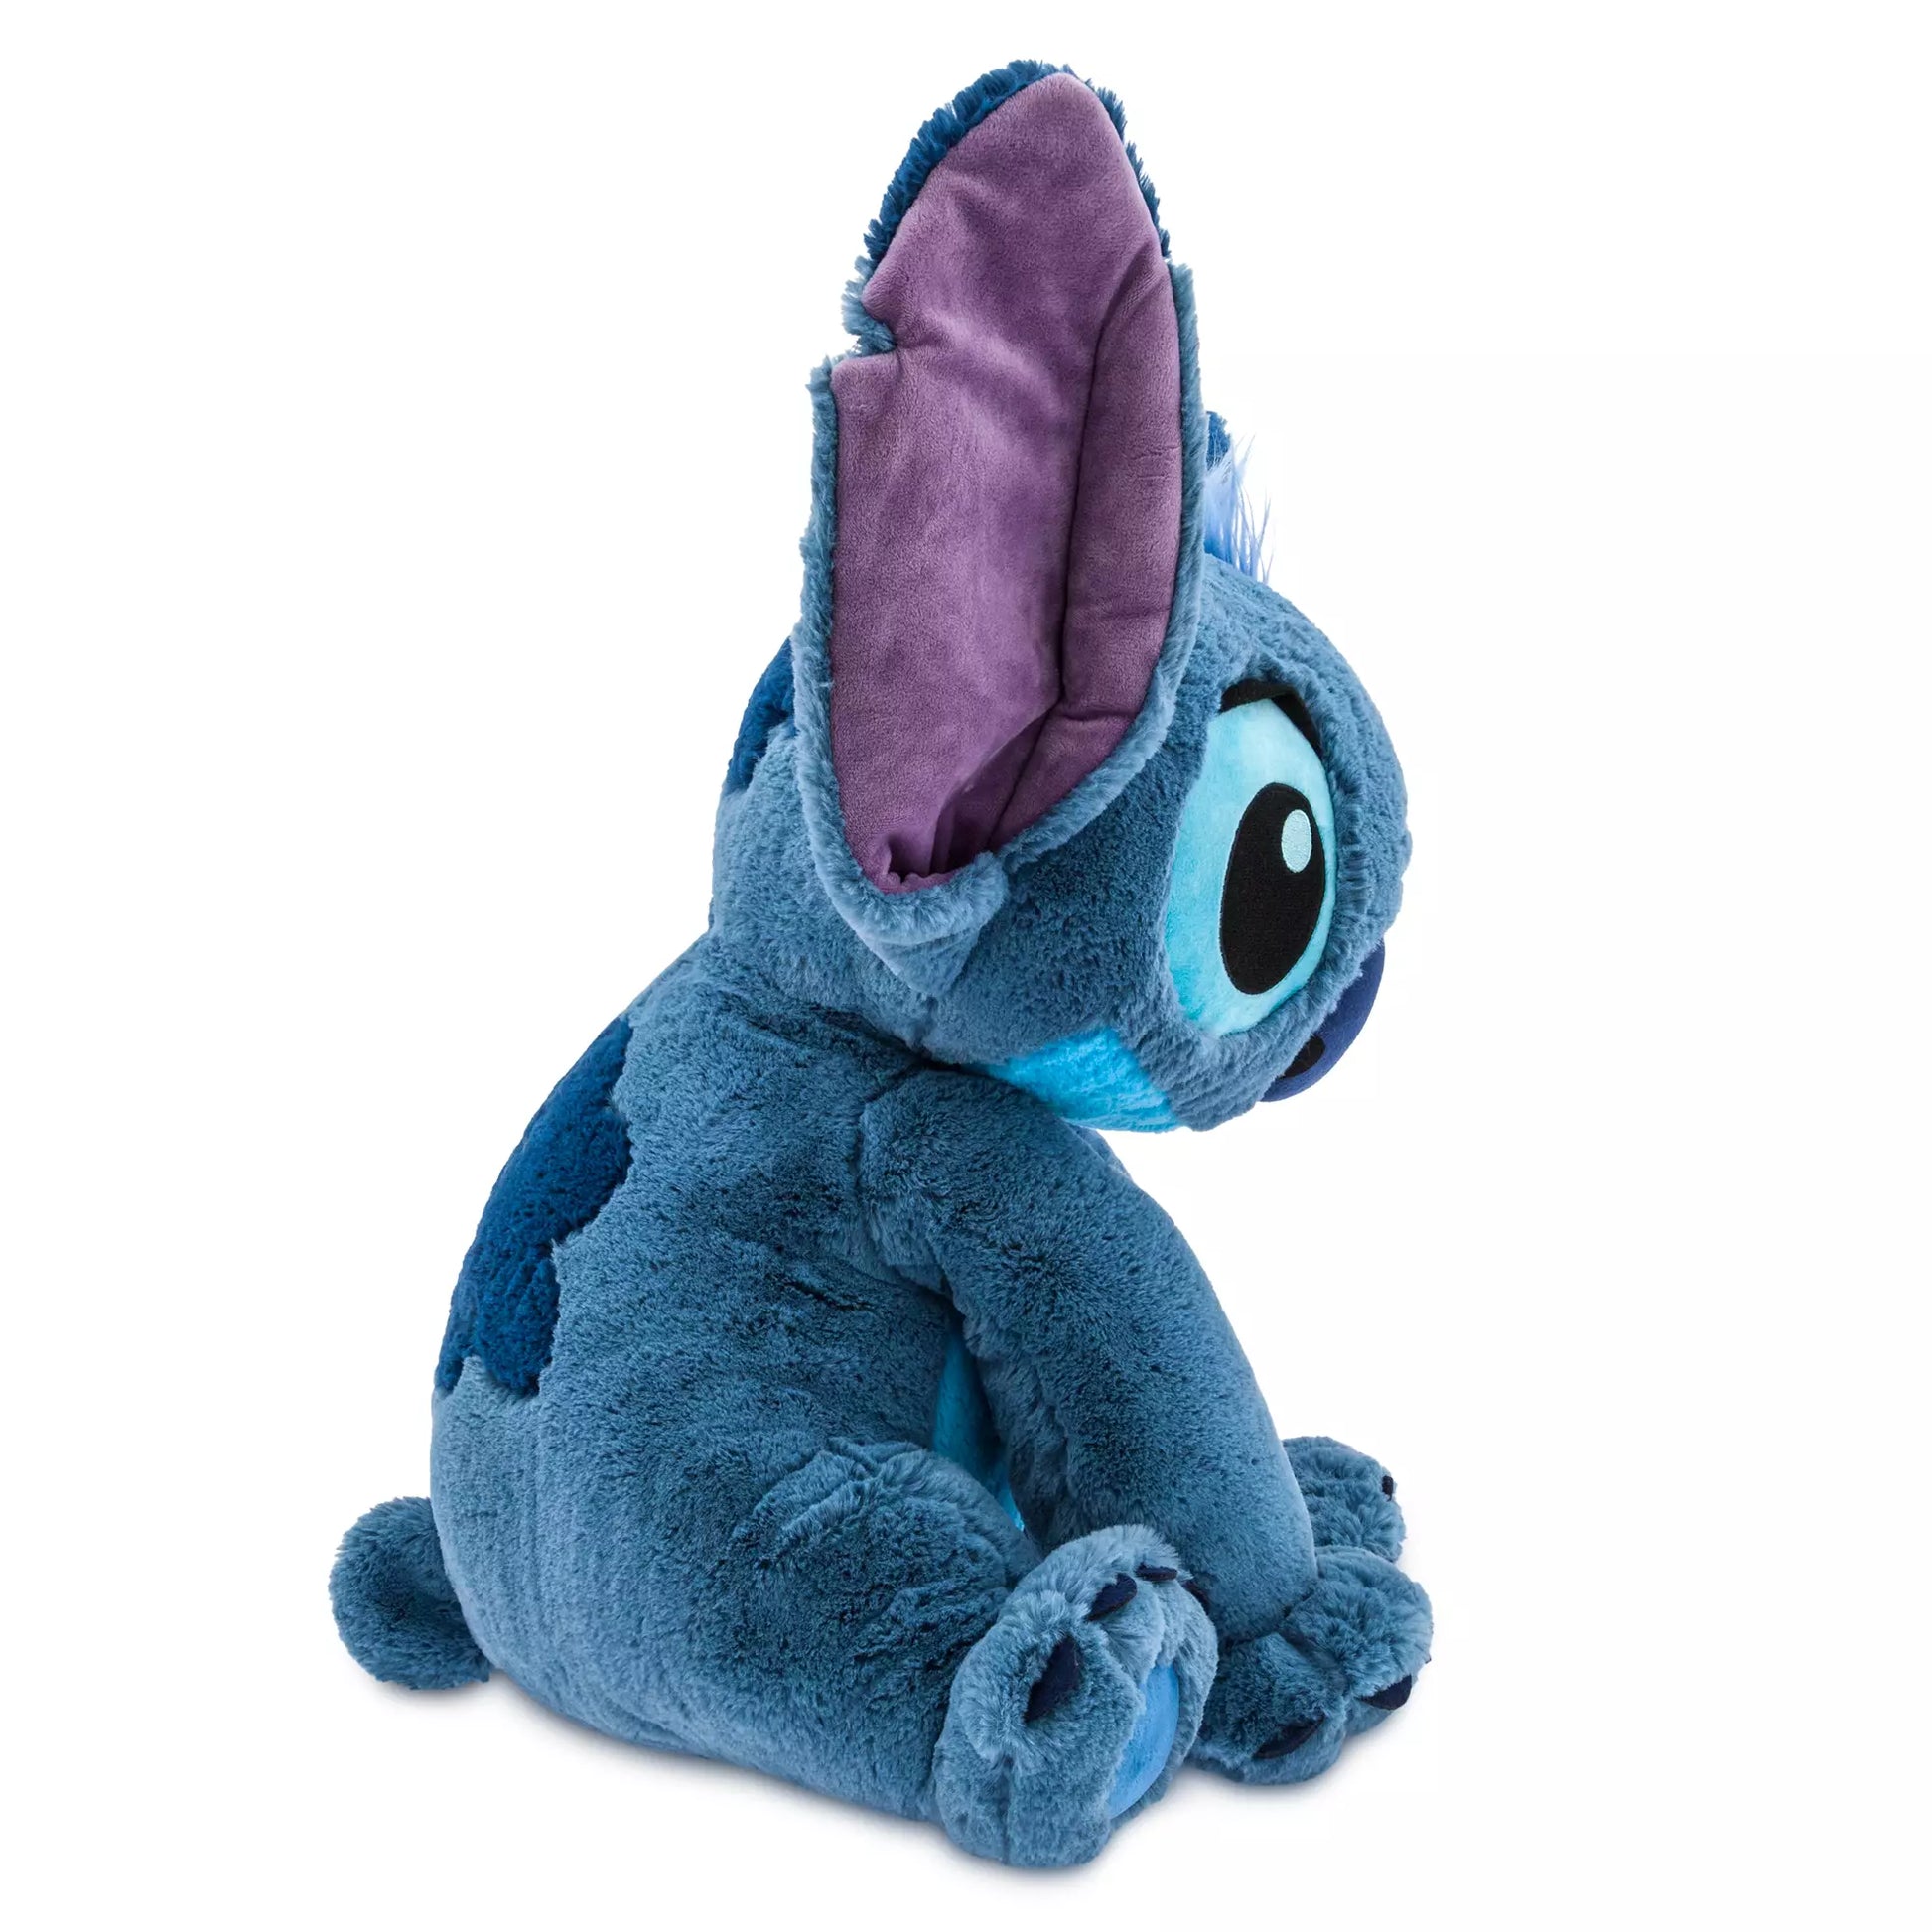  Disney Store Stitch Plush Soft Toy, Medium 15 3/4